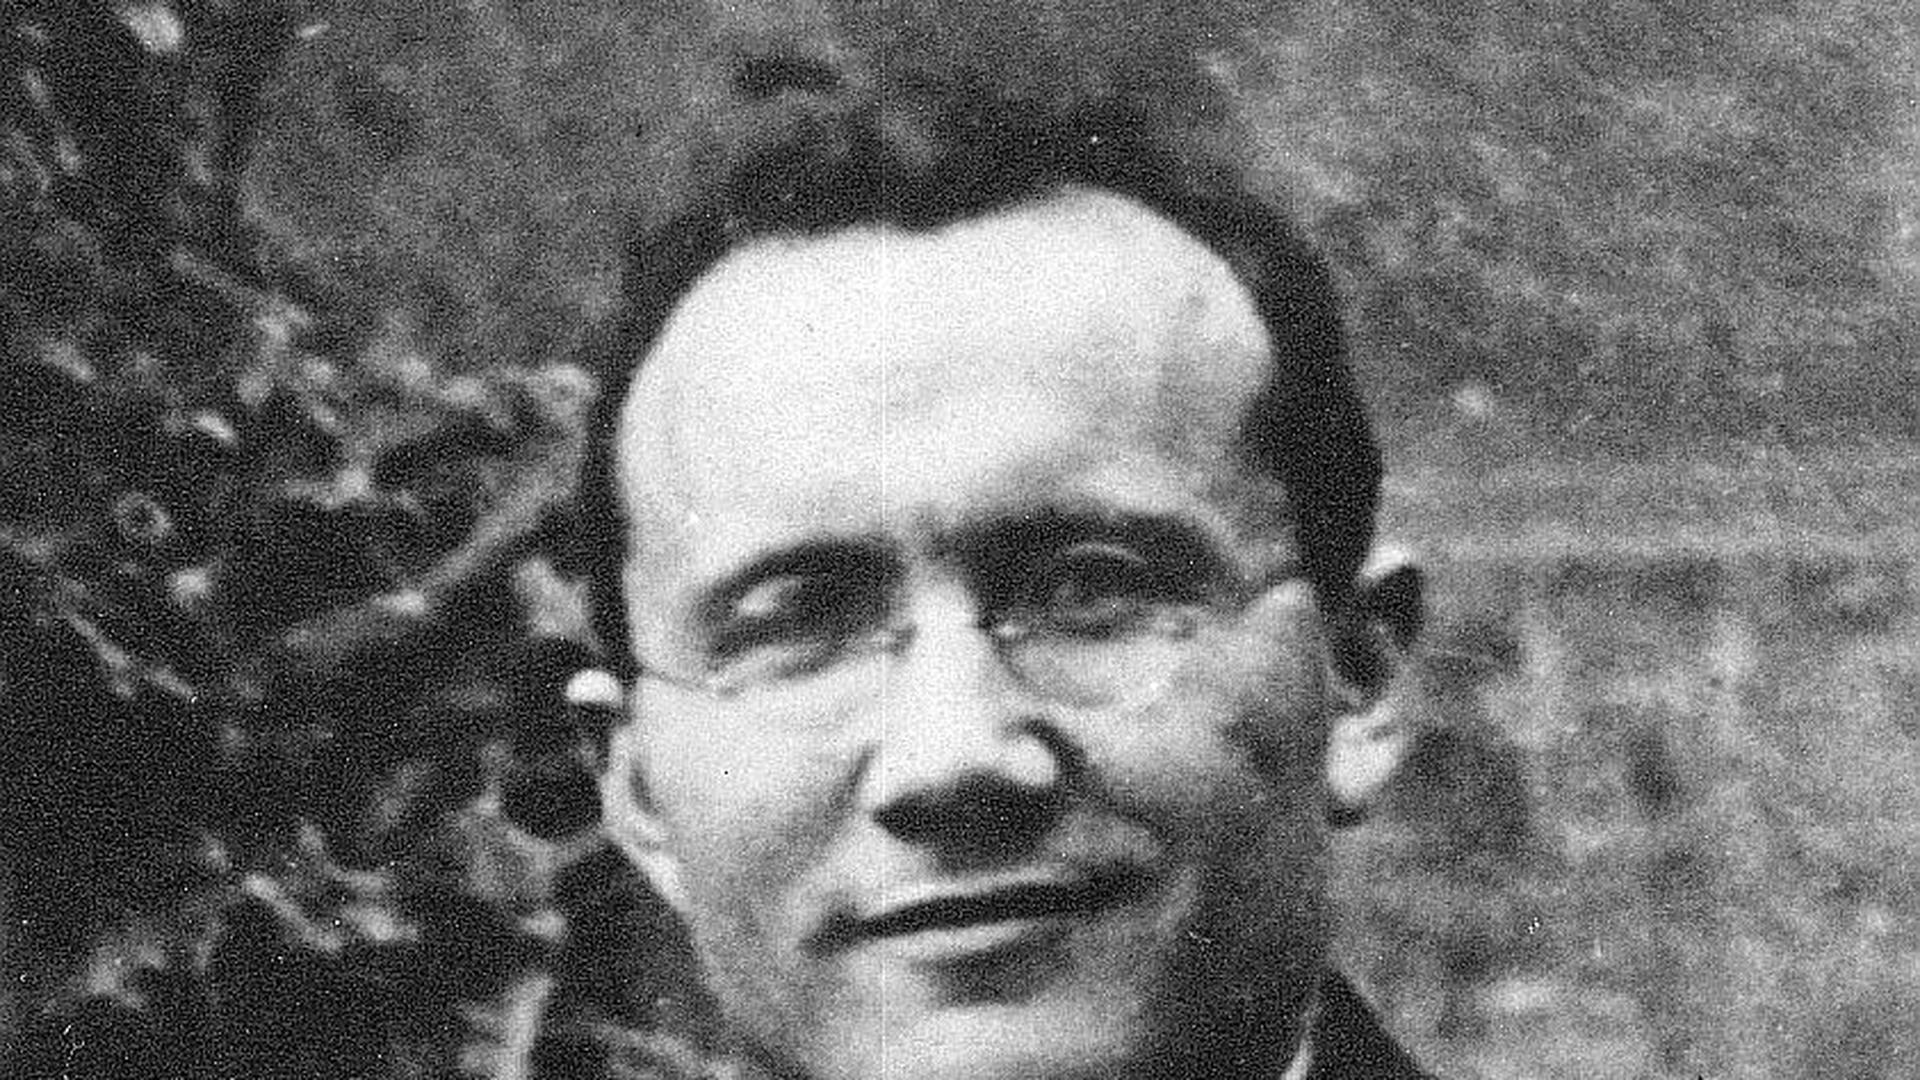 Le rédacteur du Wort Jean-Baptiste Esch a lui aussi été emmené par les occupants. Il est mort en 1942 dans les chambres à gaz du château de Hartheim.